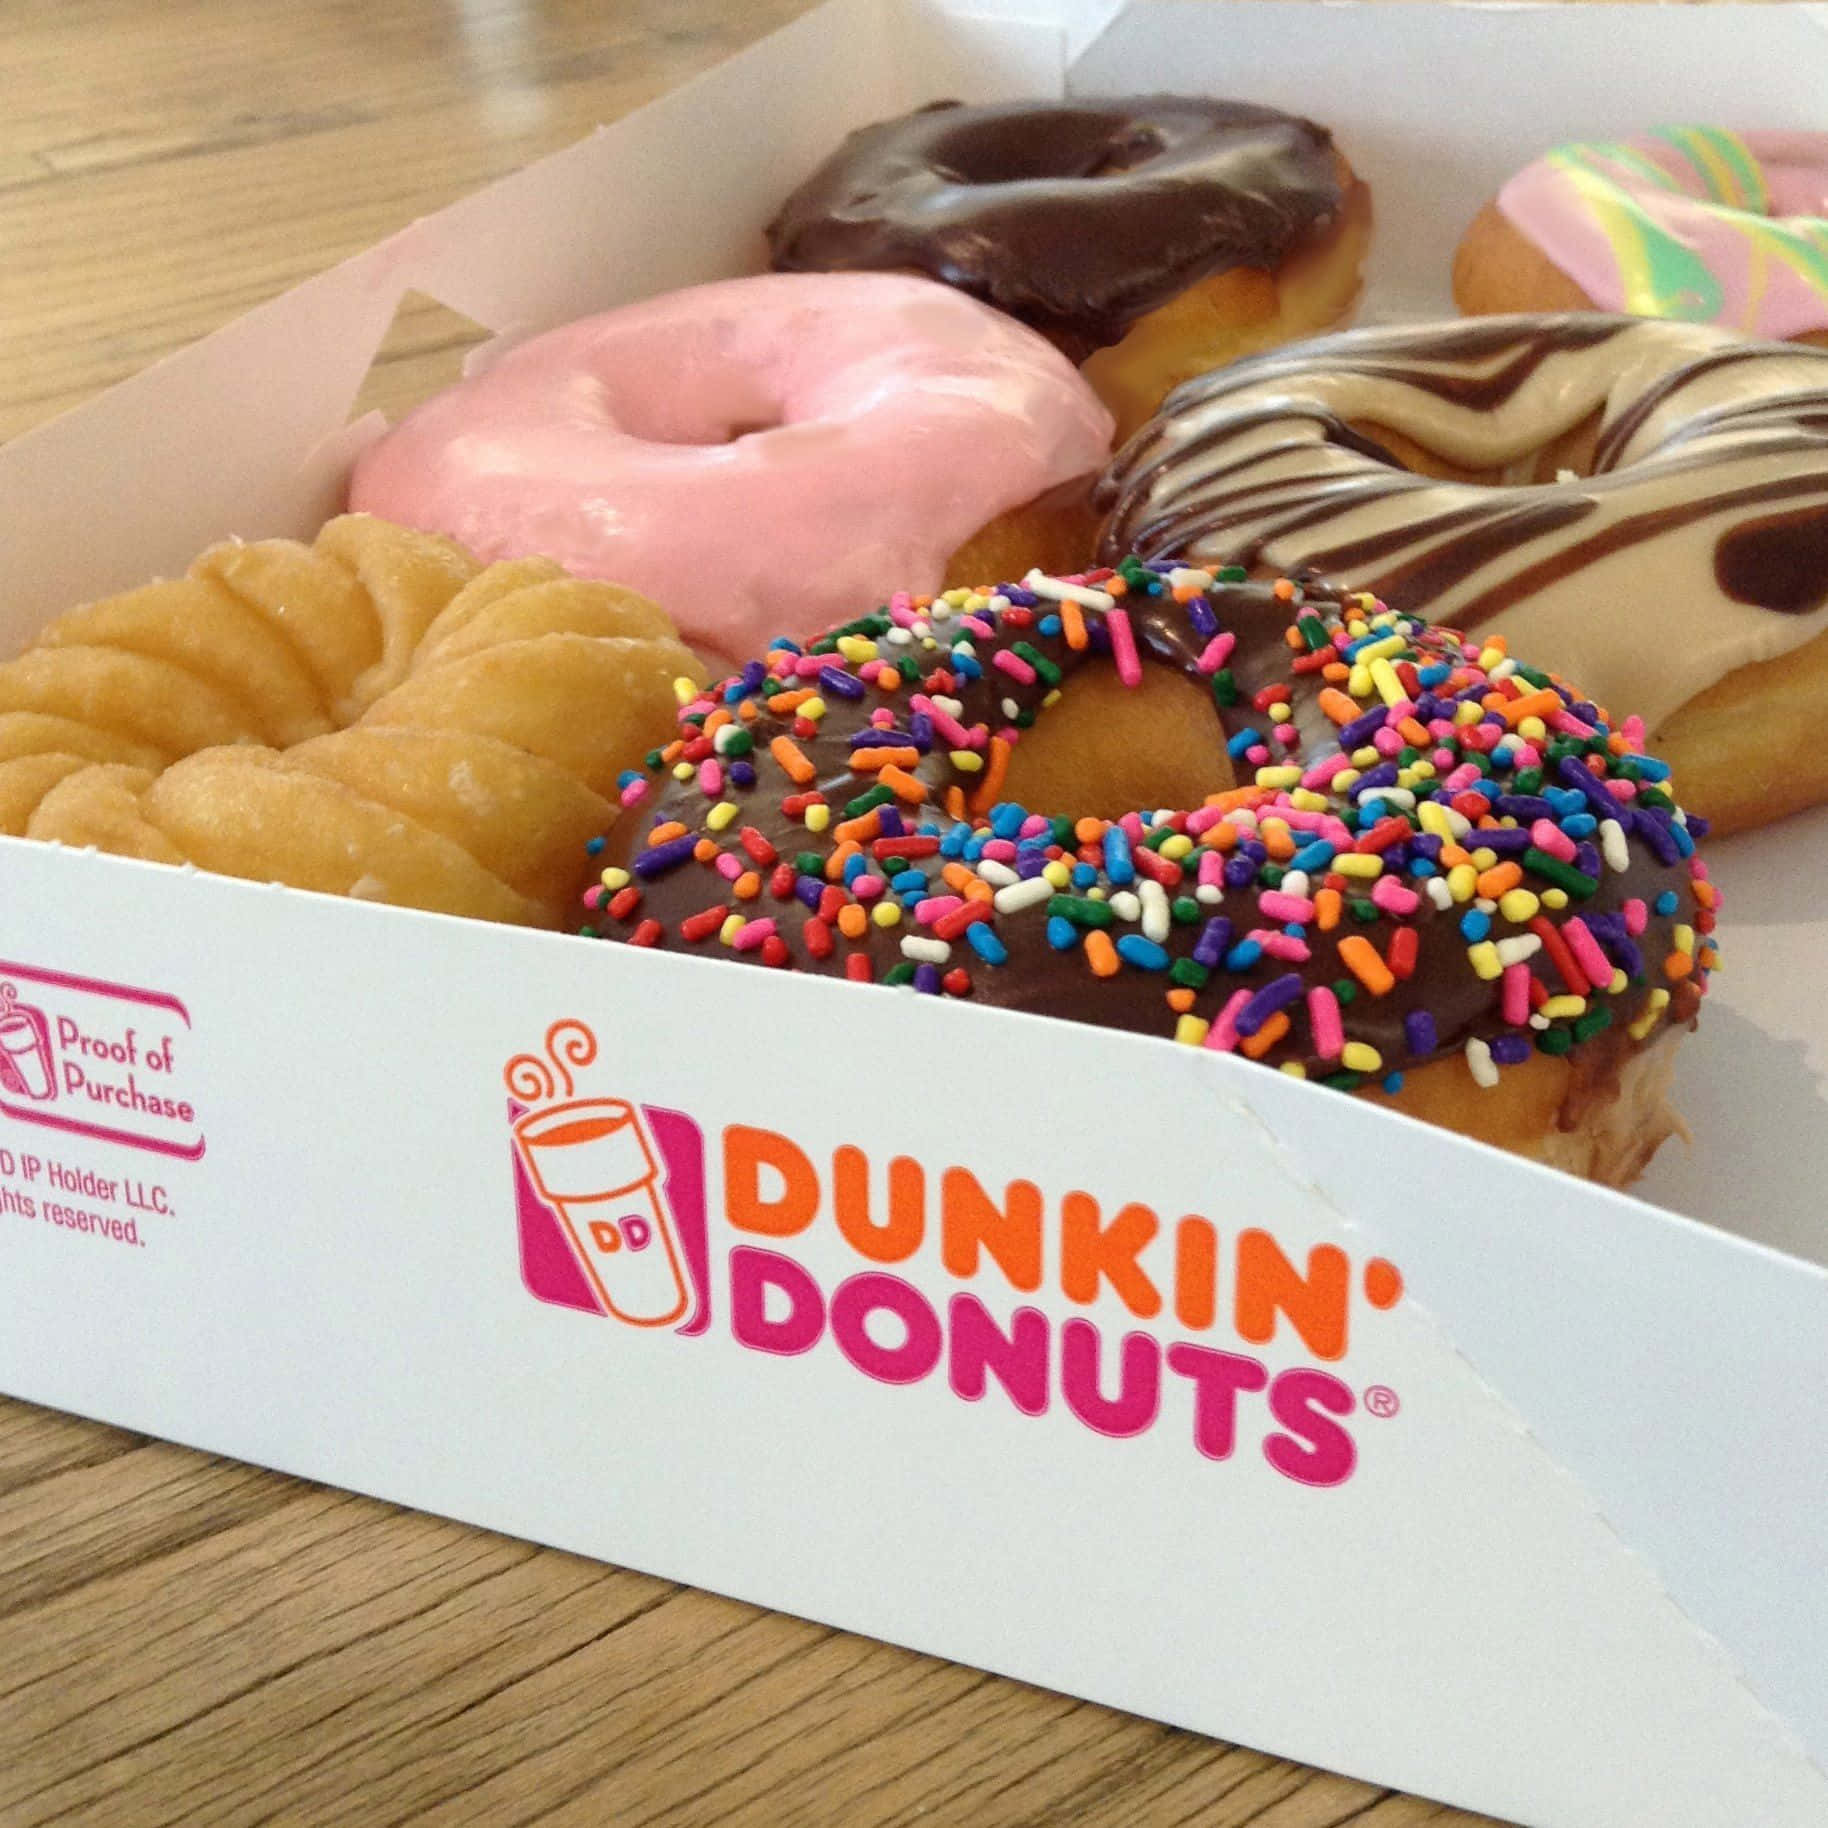 Genießensie Ihr Lieblingsgetränk Und Ihren Snack Von Dunkin Donuts!